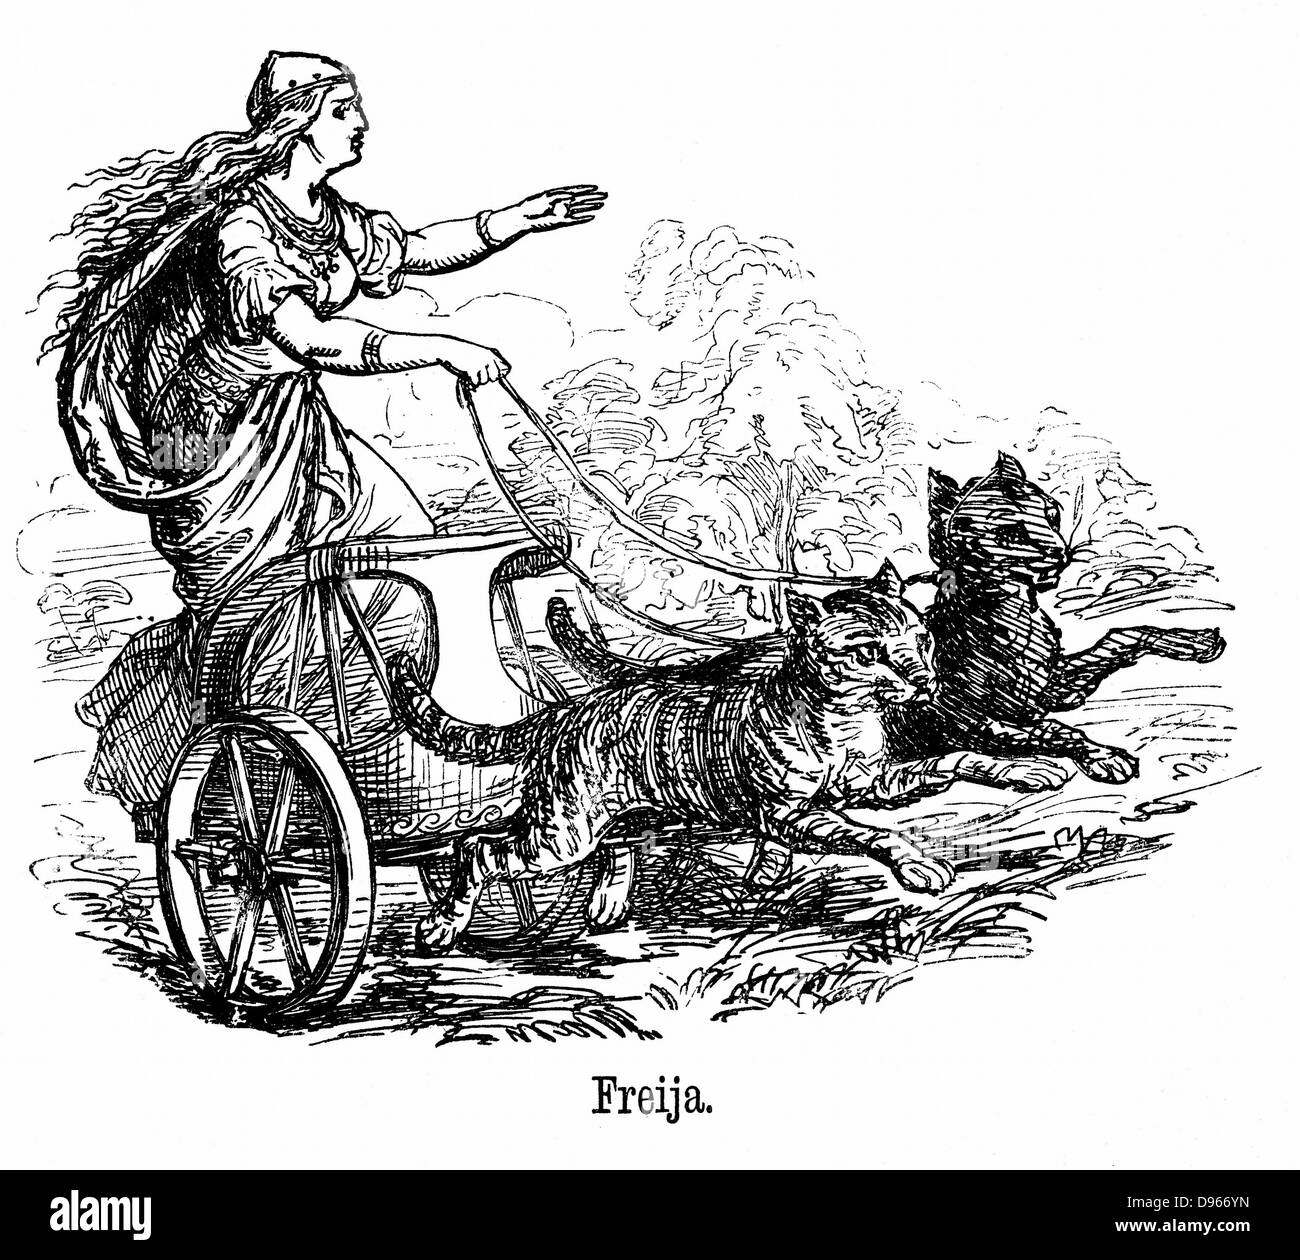 Freya o Frigg diosa del amor en la mitología escandinava, esposa de Wotan u Odin, conduce su carro tirado por gatos. El viernes es nombrado por ella. Grabado Foto de stock